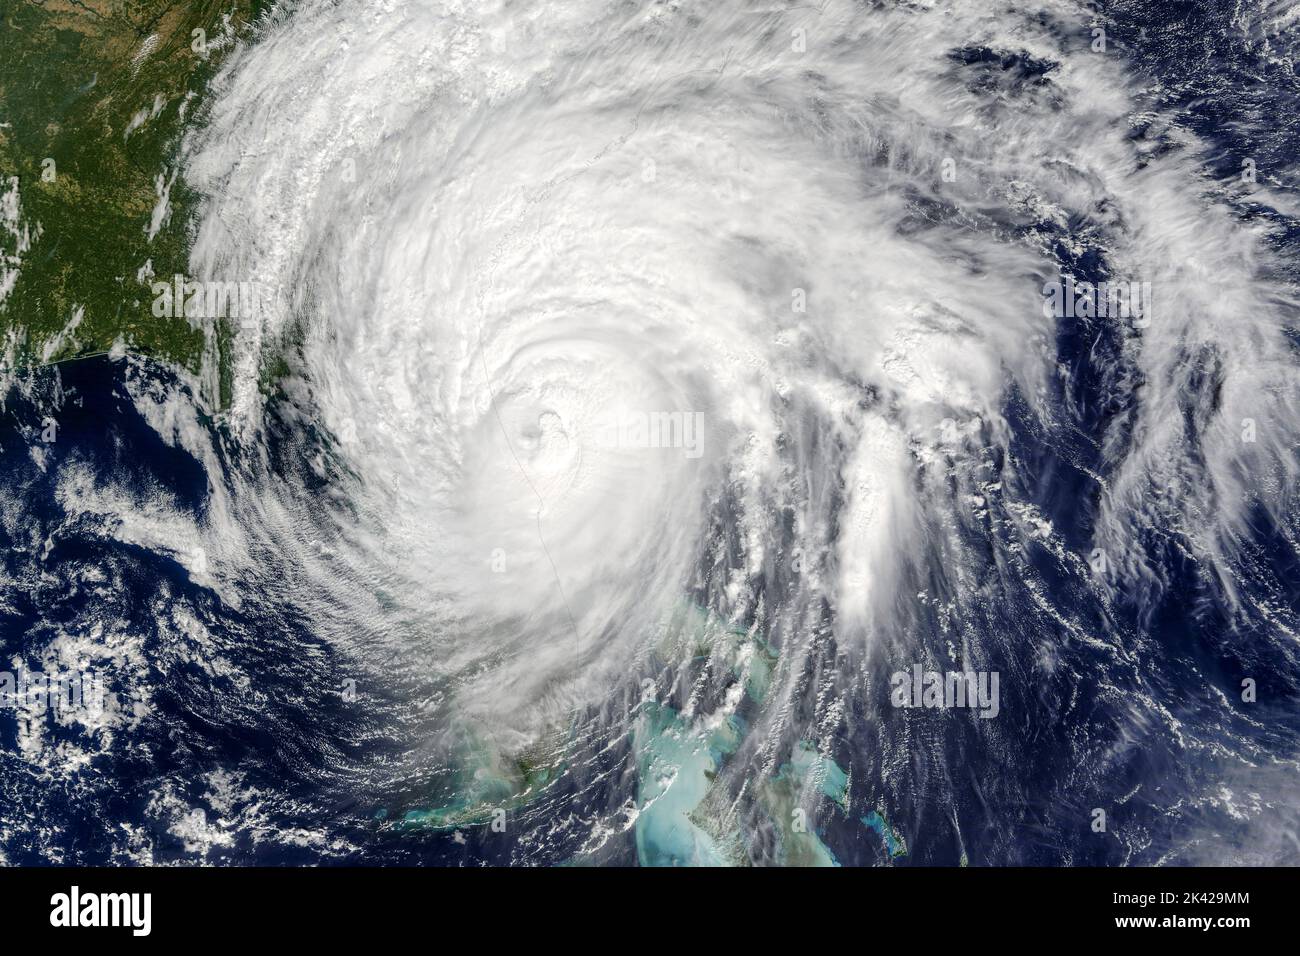 Hurrikan Matthew, der am 7. Oktober 2016 mittags am New Smyrna Beach an der Ostküste Floridas als Hurrikan der Kategorie 3 vorbeikommt. Matthew wurde am 29. September nördlich von Venezuela und Kolumbien zu einem Hurrikan, bevor er sich einer explosiven Intensivierung unterzog und am 1. Oktober schließlich die Intensität der Kategorie 5 erreichte, wobei der 1-minütige Spitzenwind 165 km/h erreichte. Stockfoto